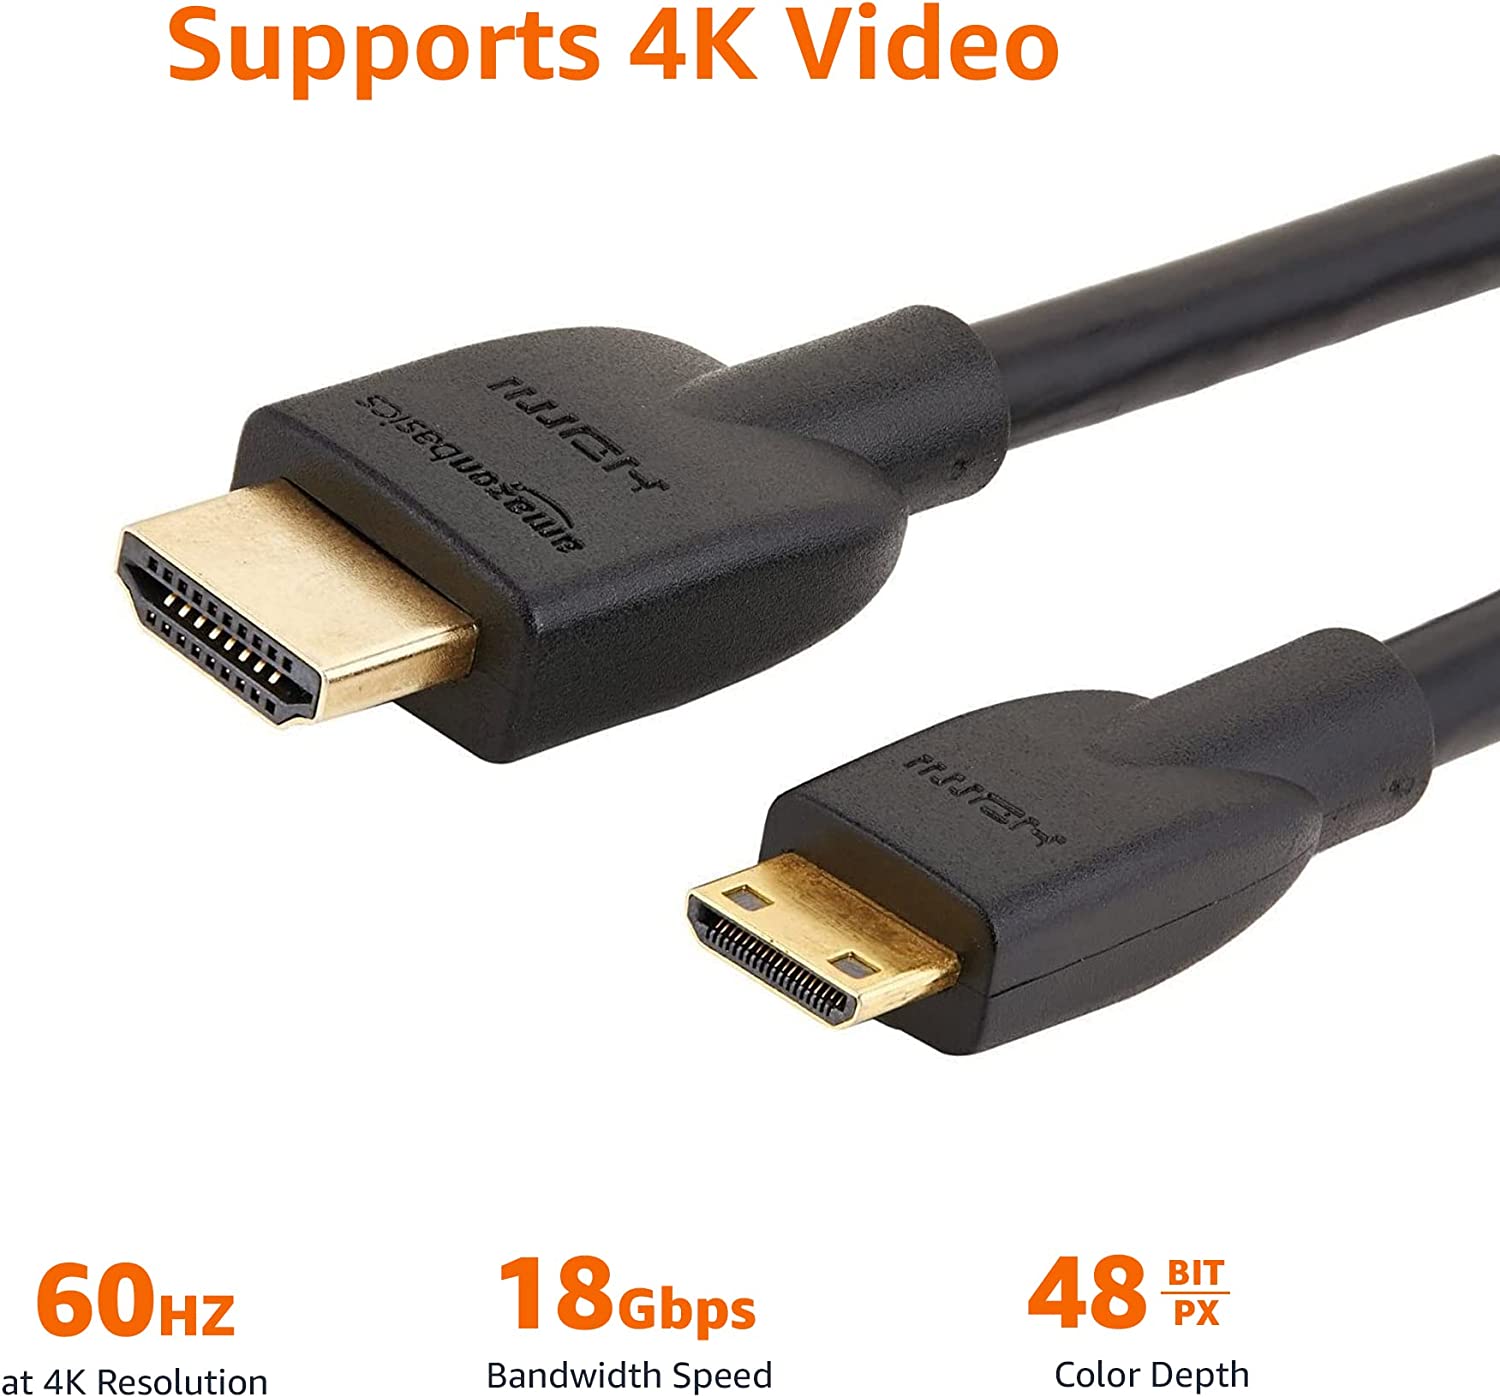 Mini HDMI Cables